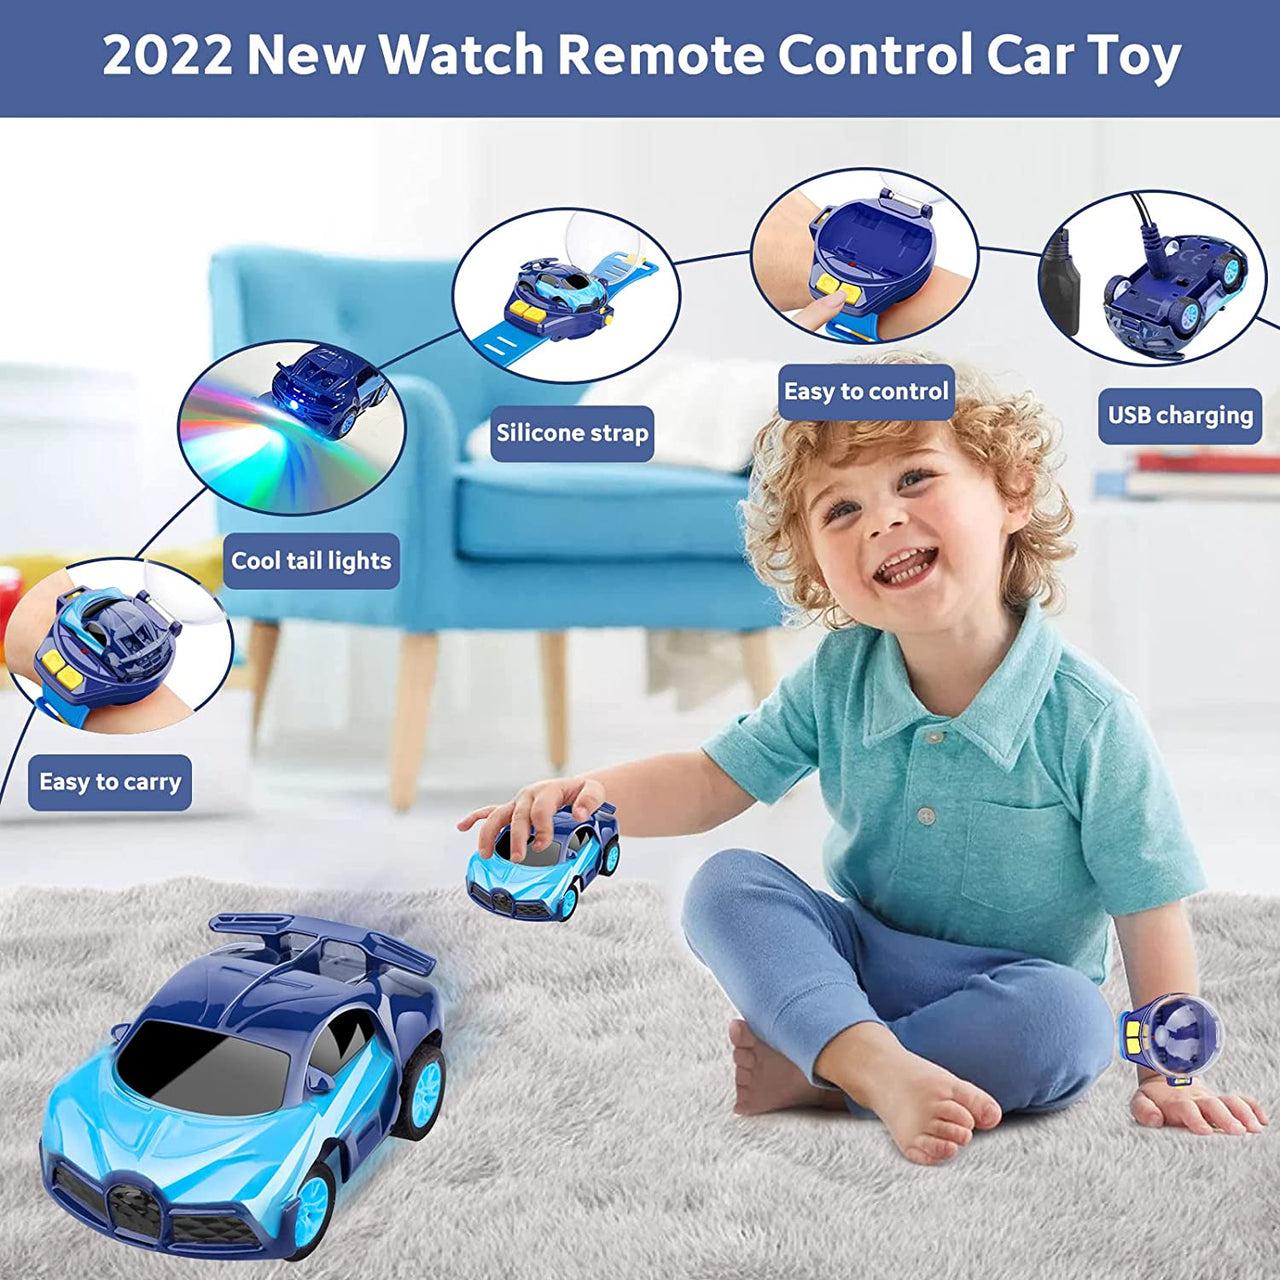 Mini Wrist Watch Remote Control Car: Unique Features and Impressive Design Make the Mini Wrist Watch Remote Control Car a Must-Have Toy